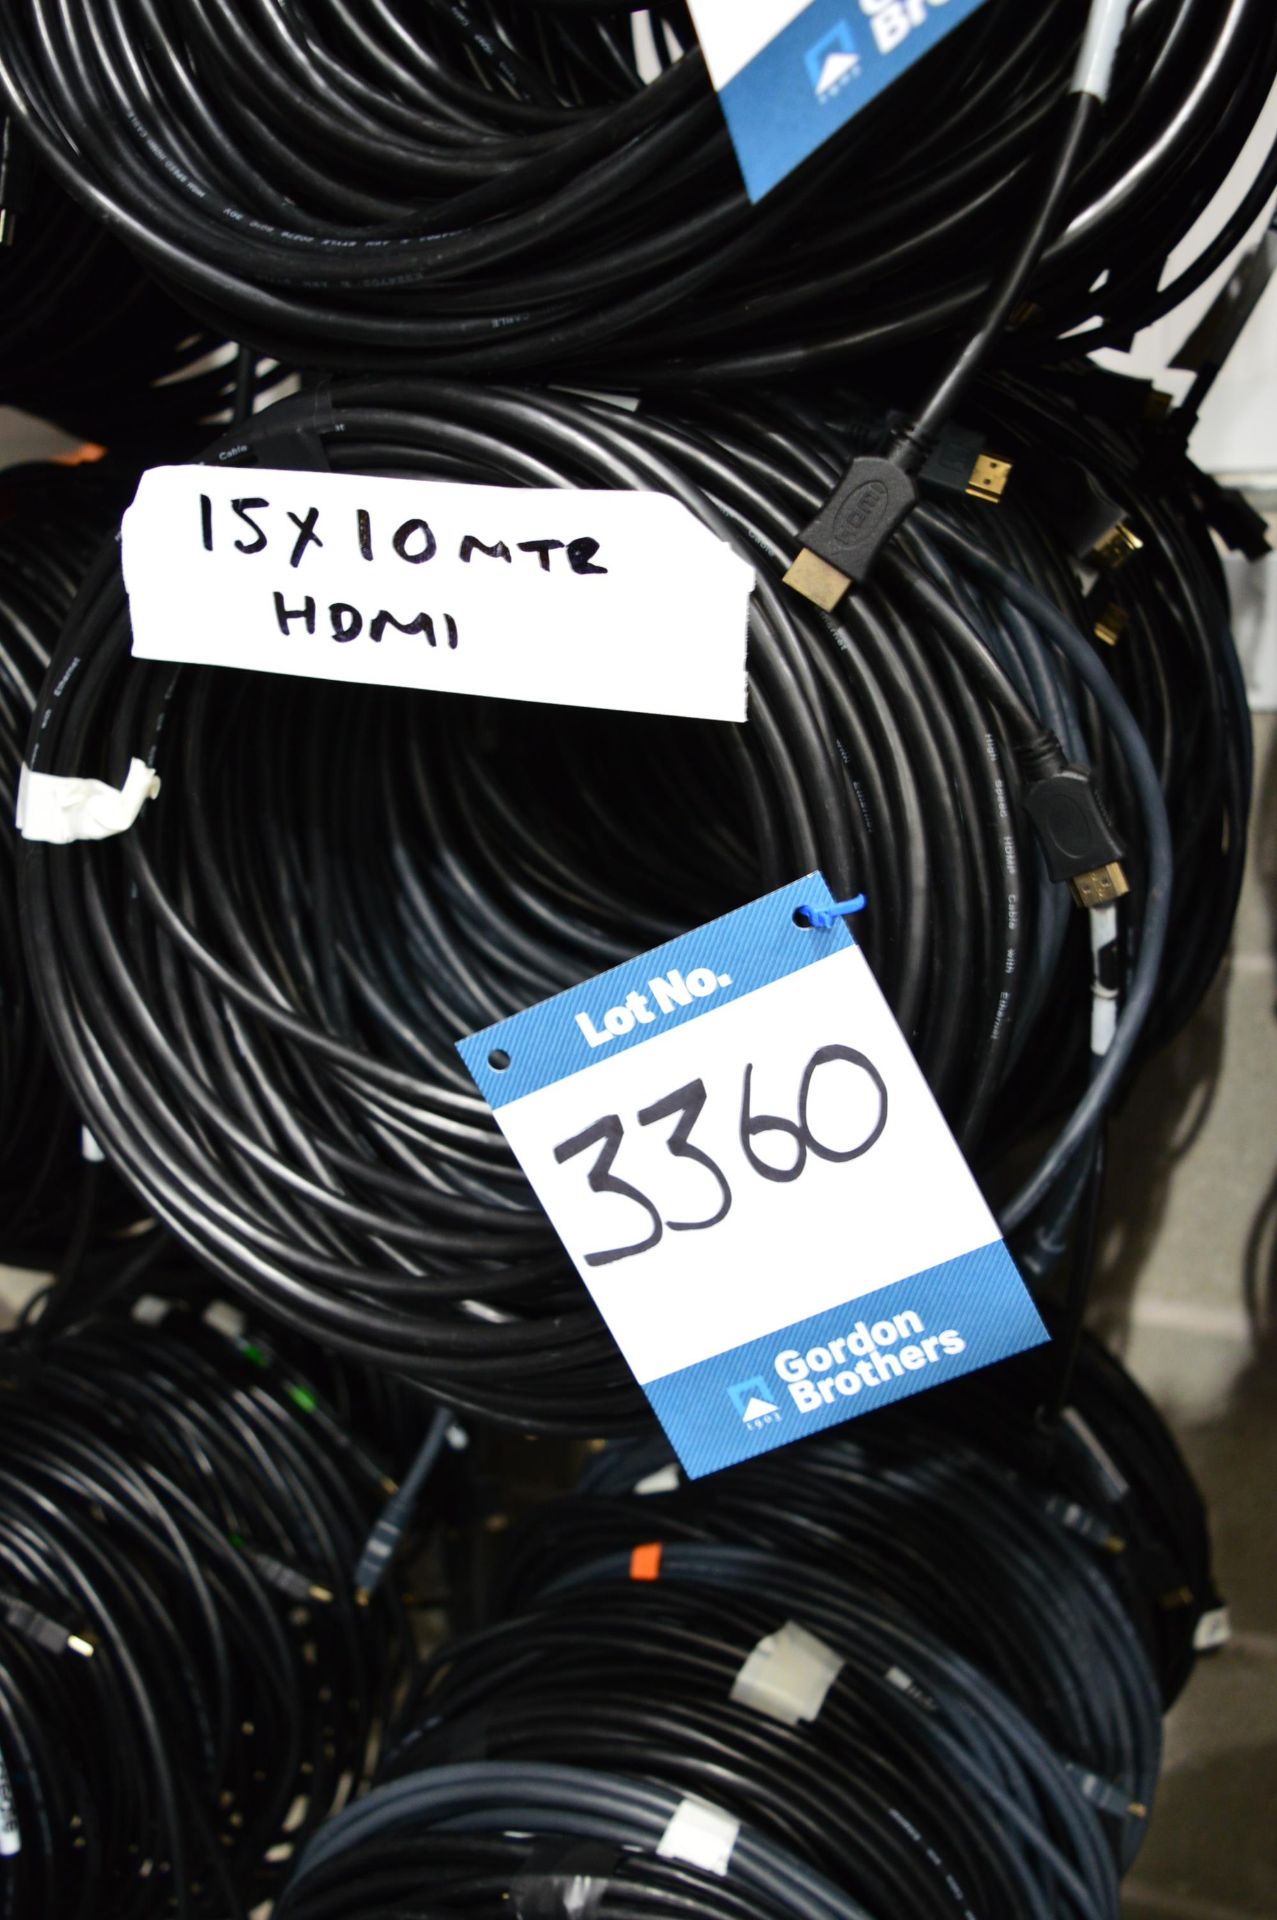 15x 10m HDMI cables: Unit 500, Eckersall Road, Birmingham B38 8SE